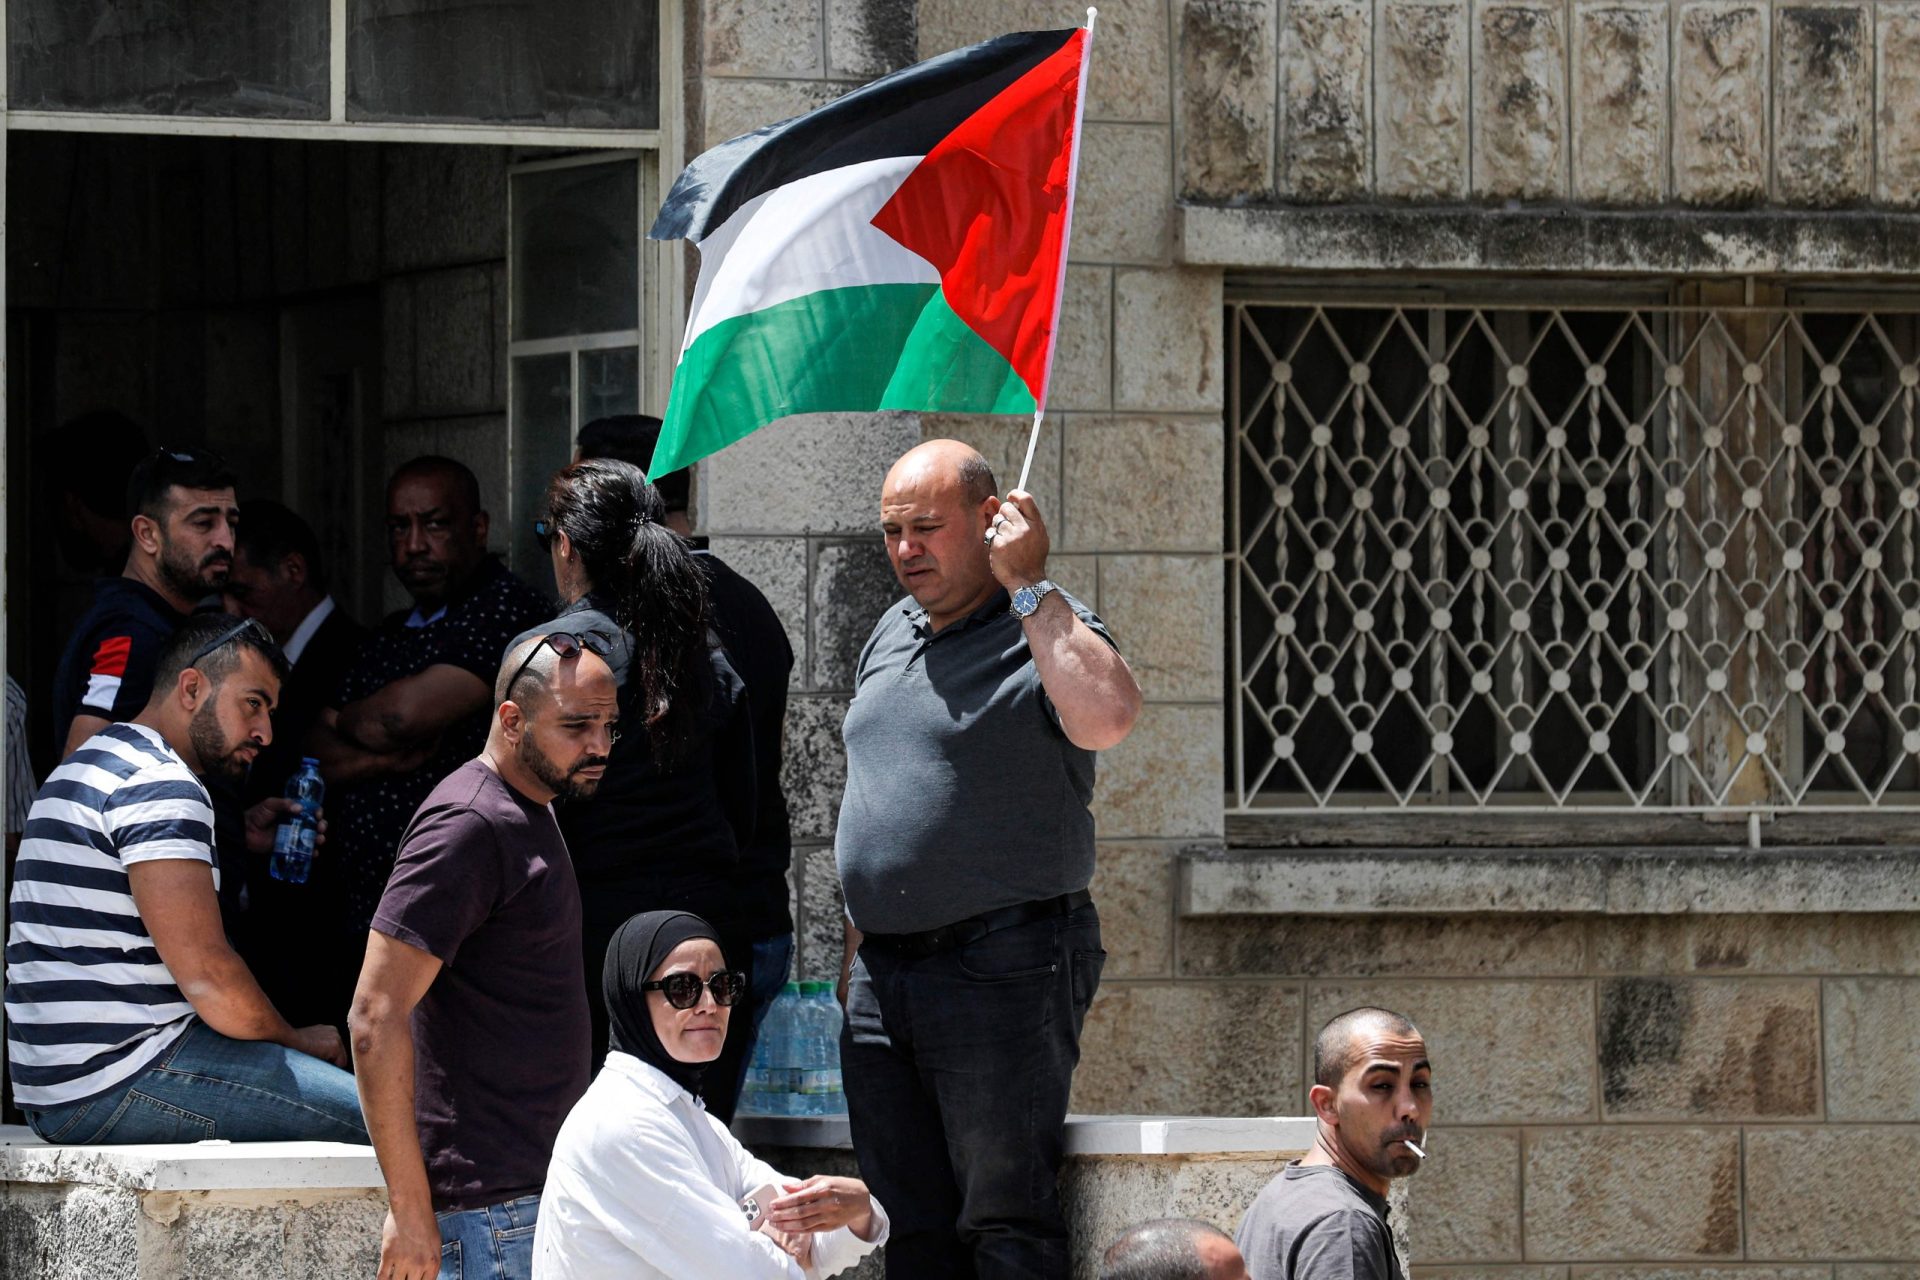 15 países europeus pedem a Israel que pare construções na Cisjordânia. Portugal não subscreve